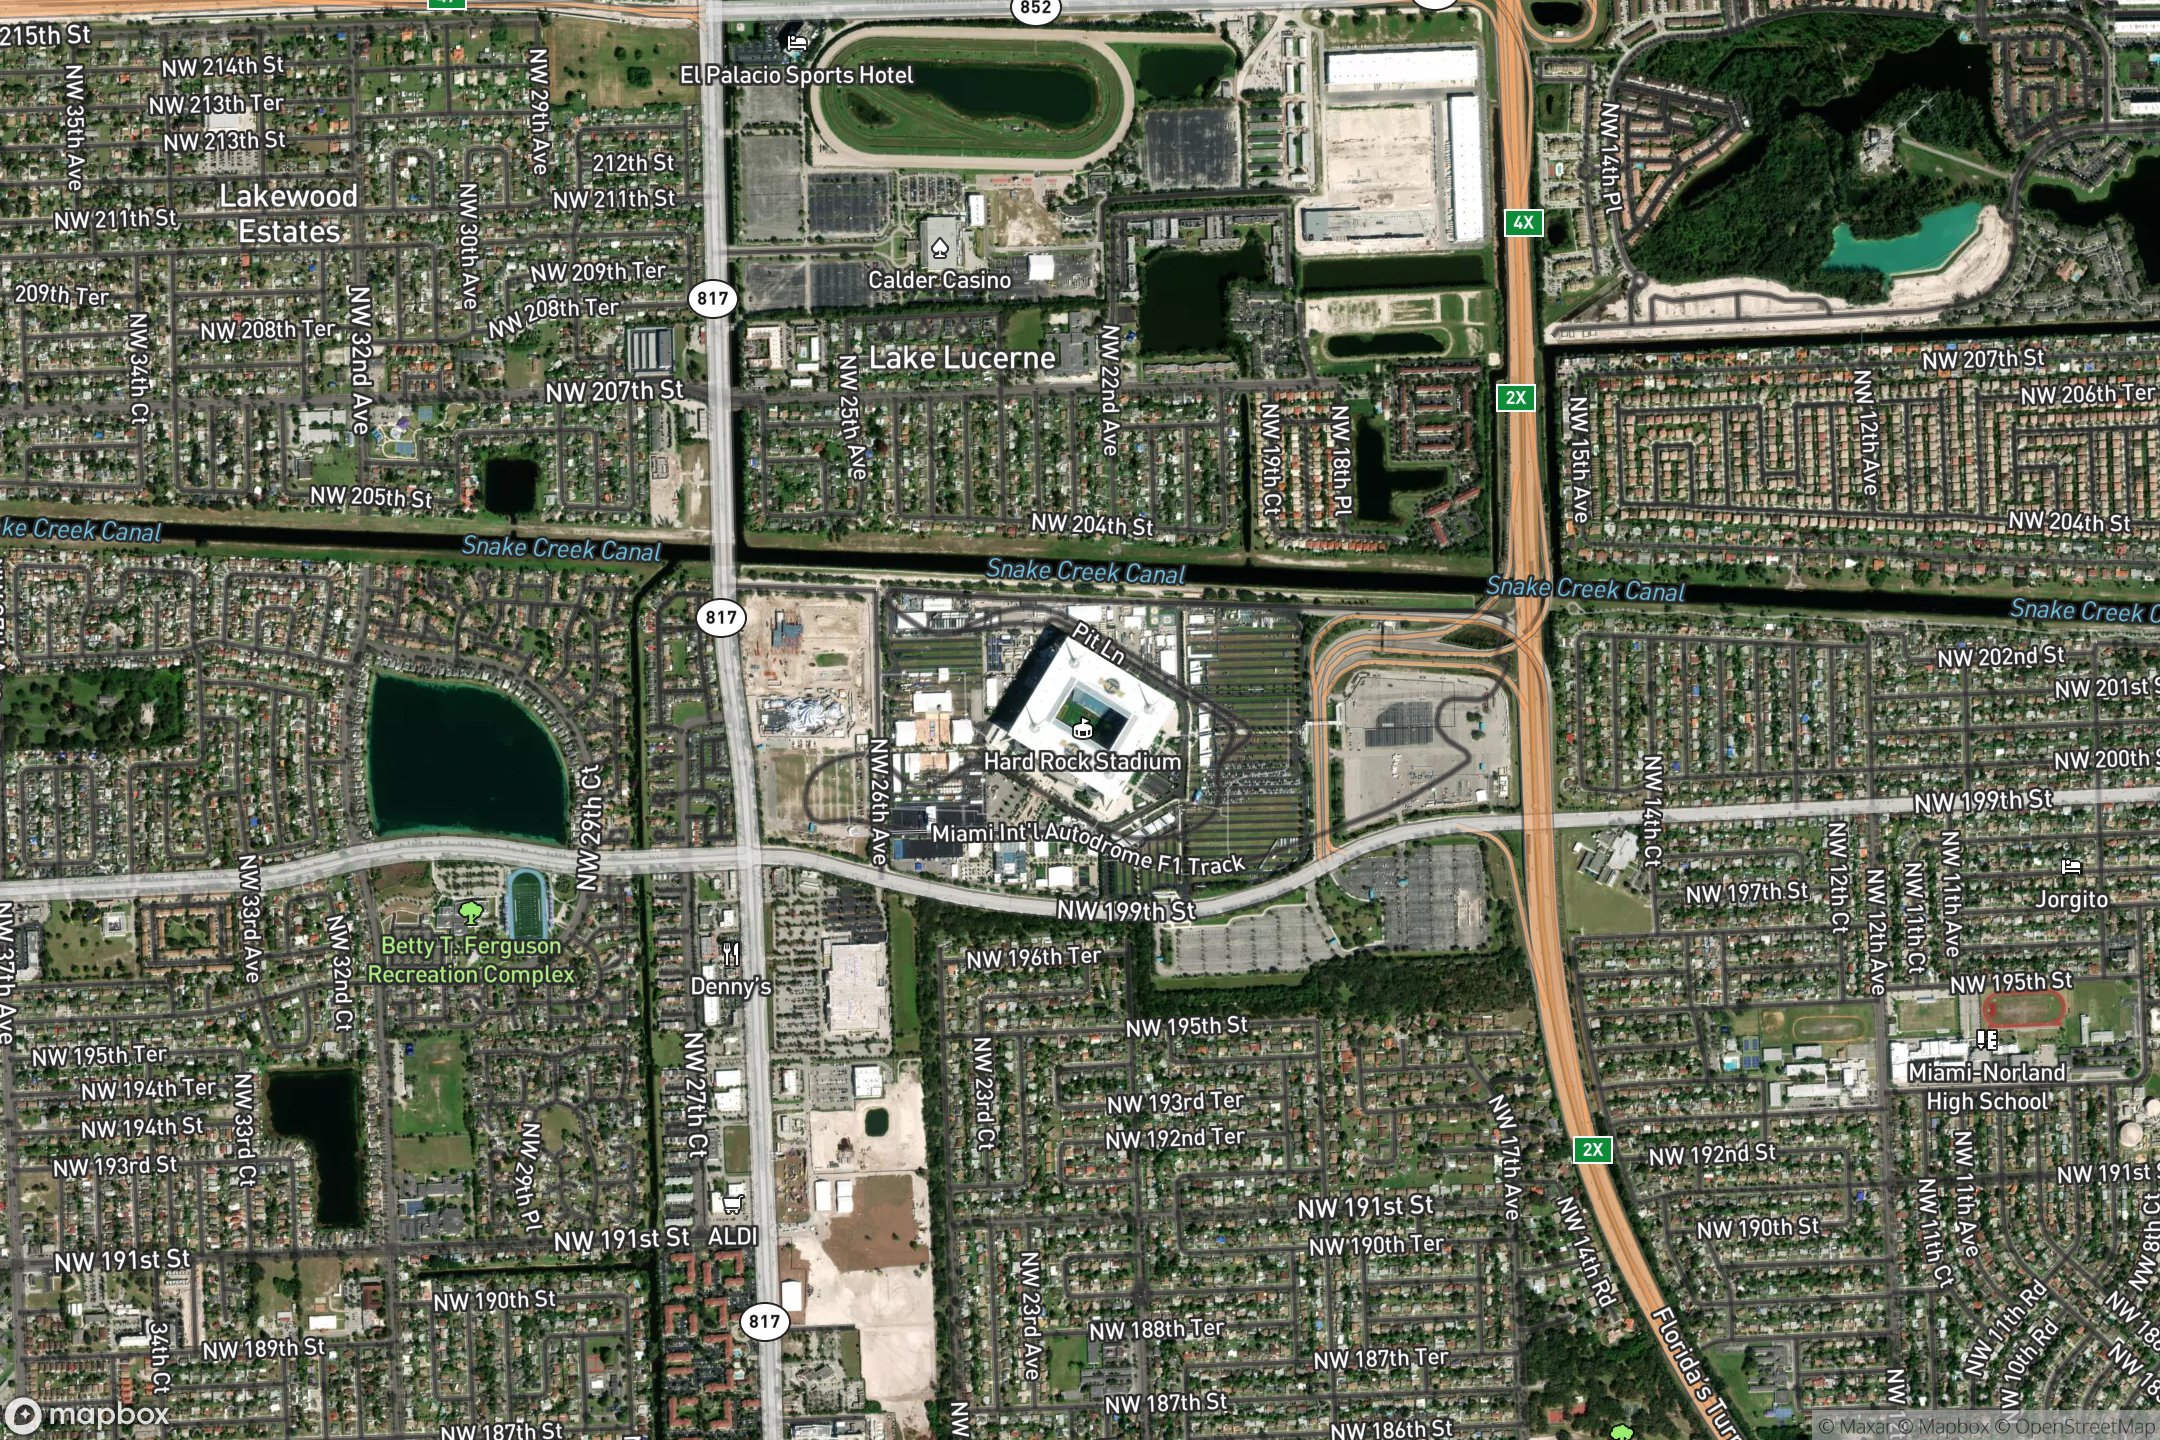 Vue satellite du circuit Miami International Autodrome